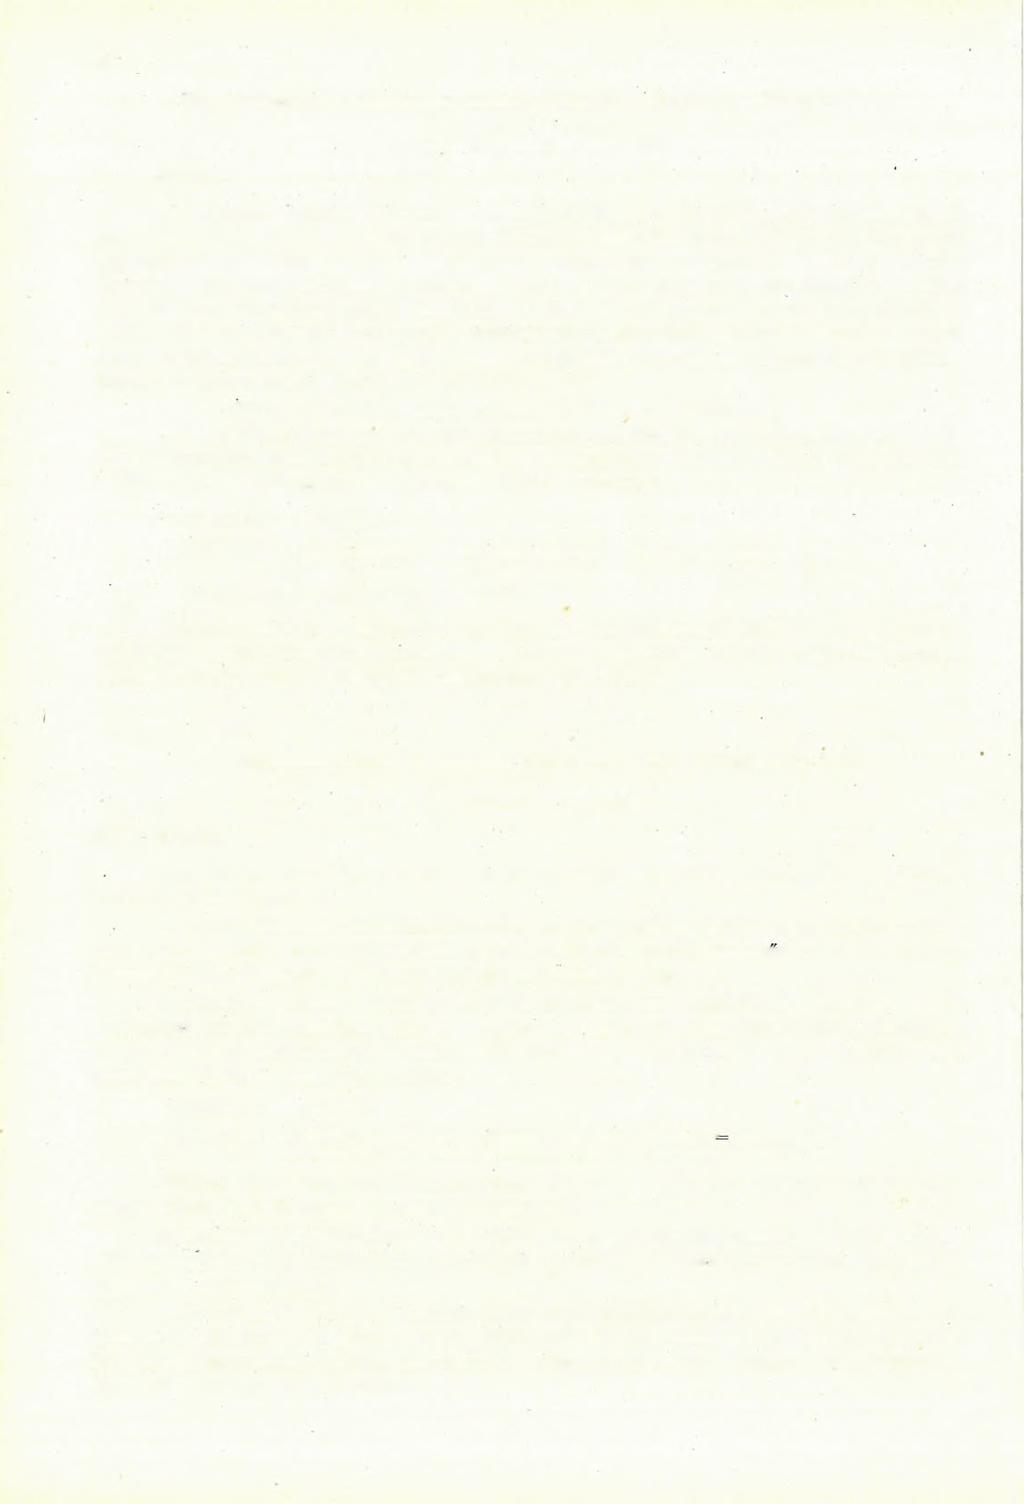 30 Hypsoheteroclypus plagiosomus lamberti [Checchia R ispoli], 1917. Szörényi 9. sz. példány. У. tábla, 1., 1. a, 2., 2. a b. ábra A Checchia R ispoli (17 69., У. t., 8.